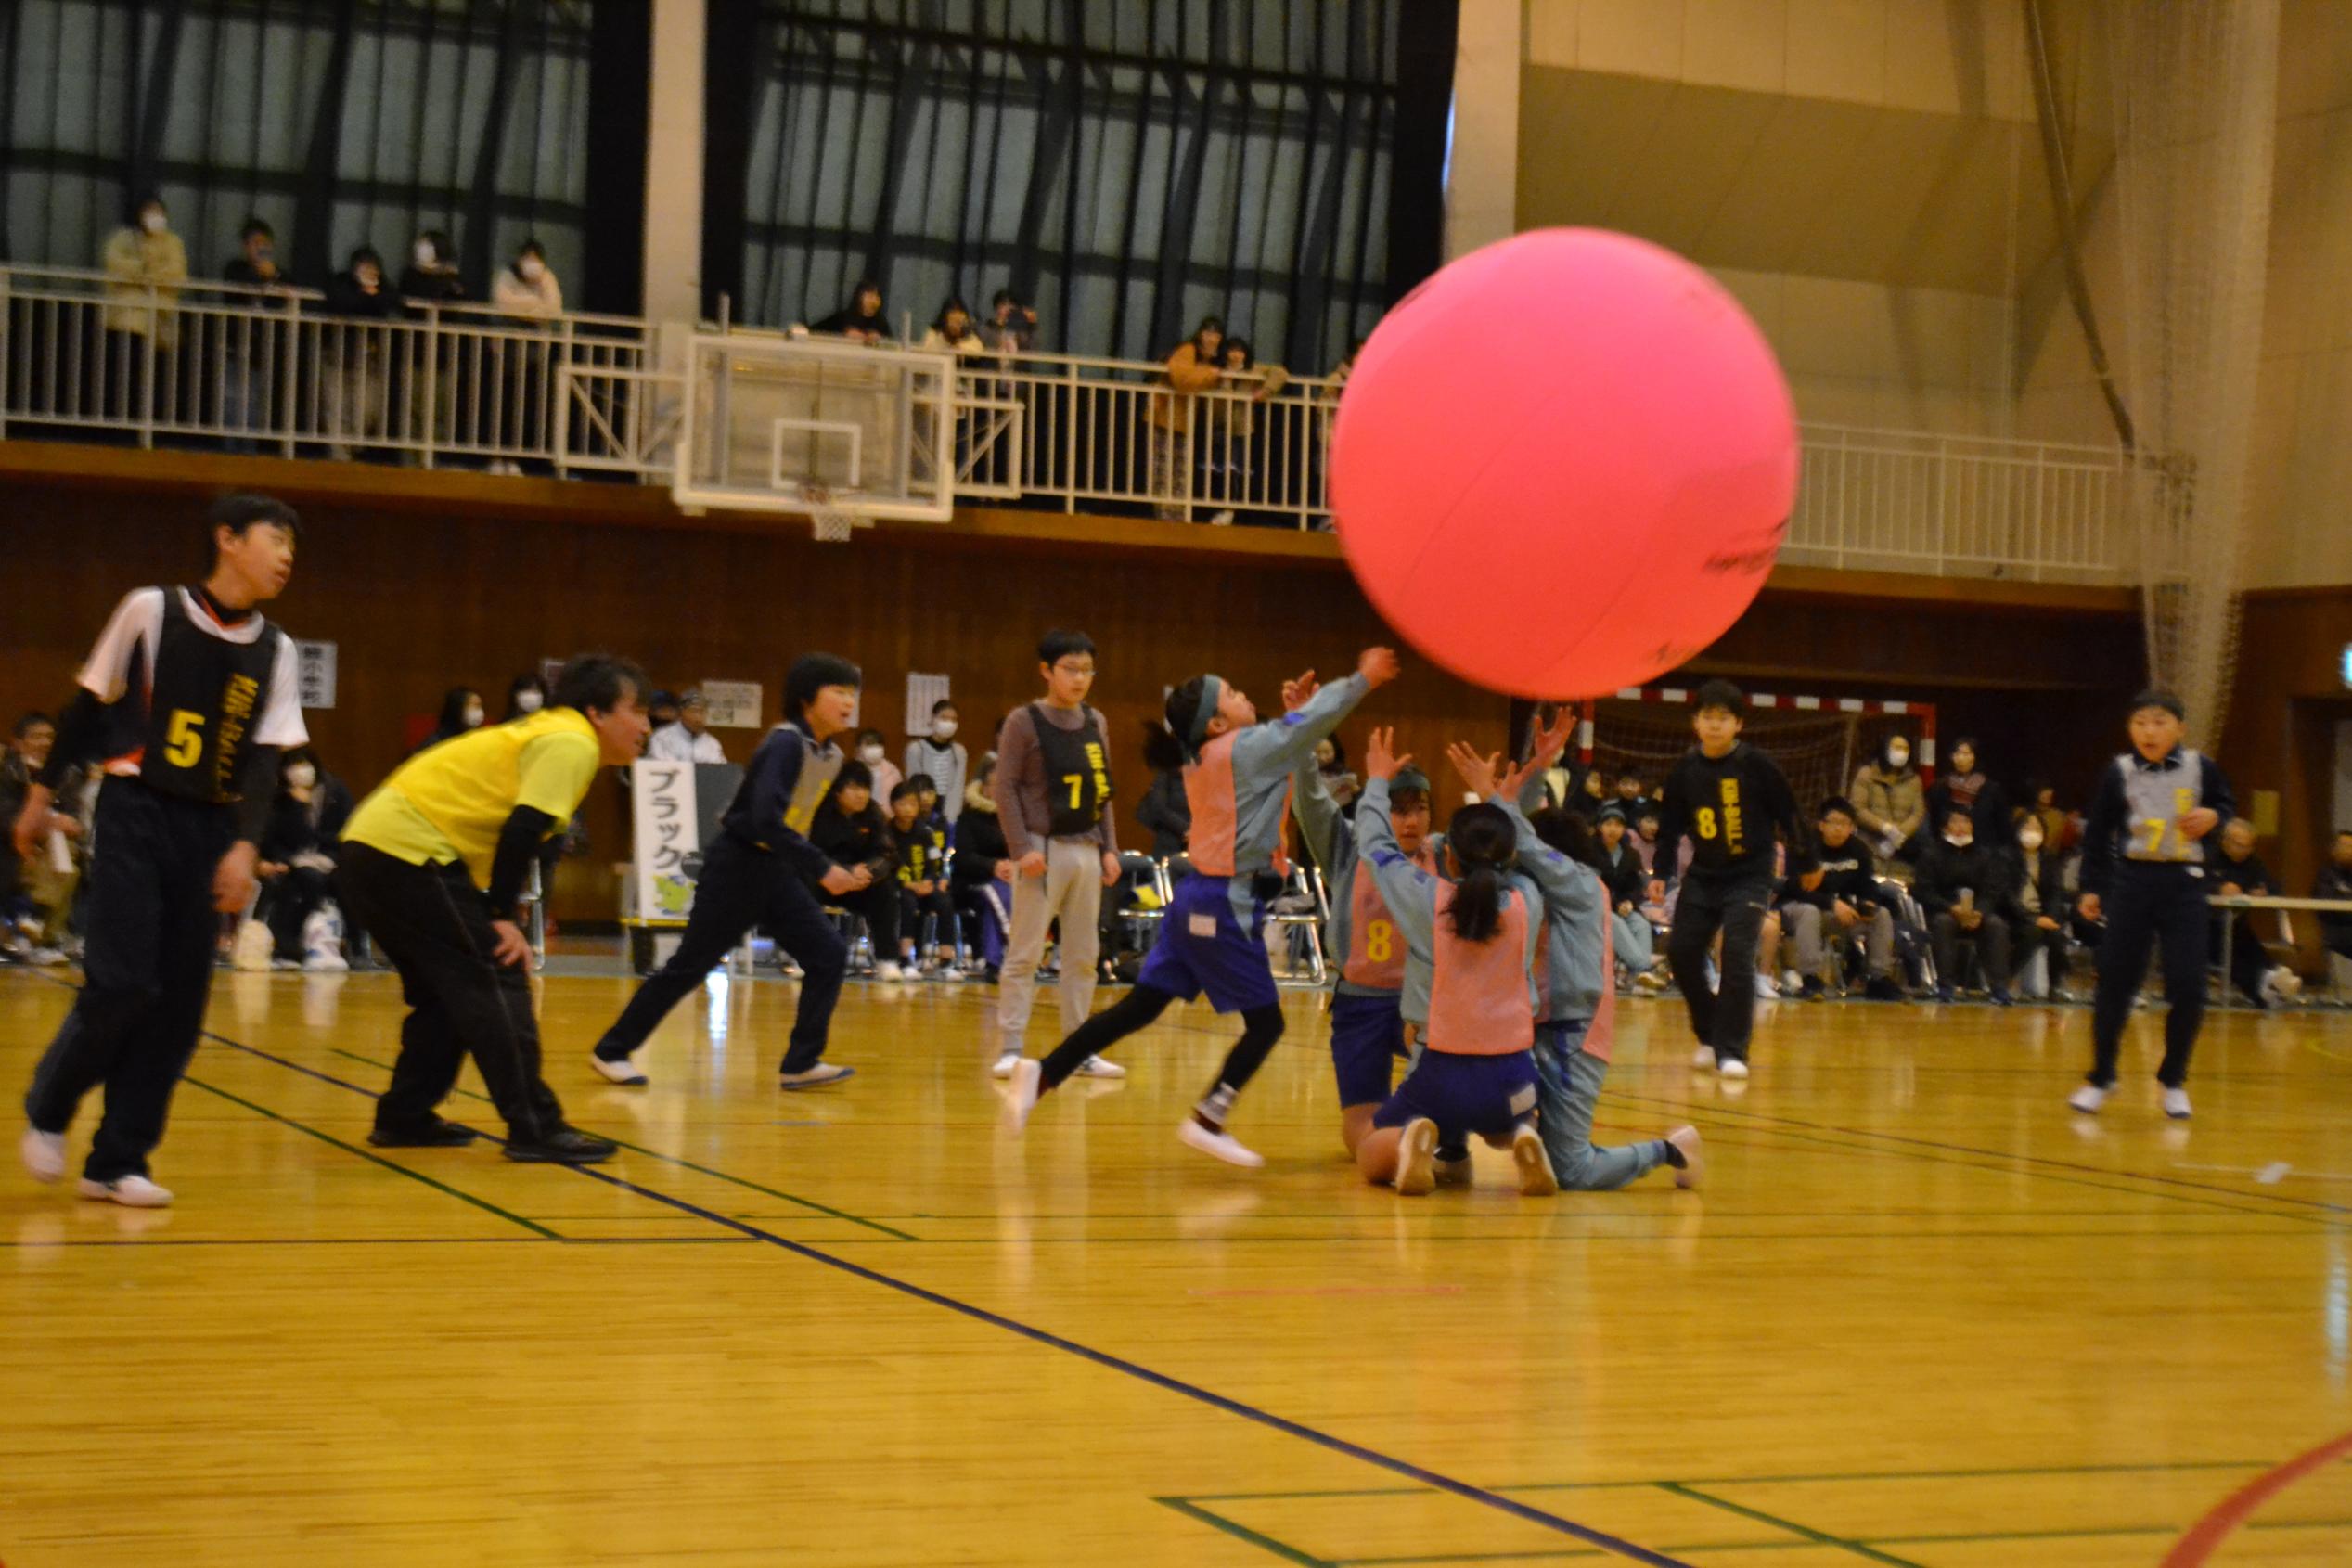 第4回カンピくんカップ市内小学校交流キンボールスポーツ大会が開催されました